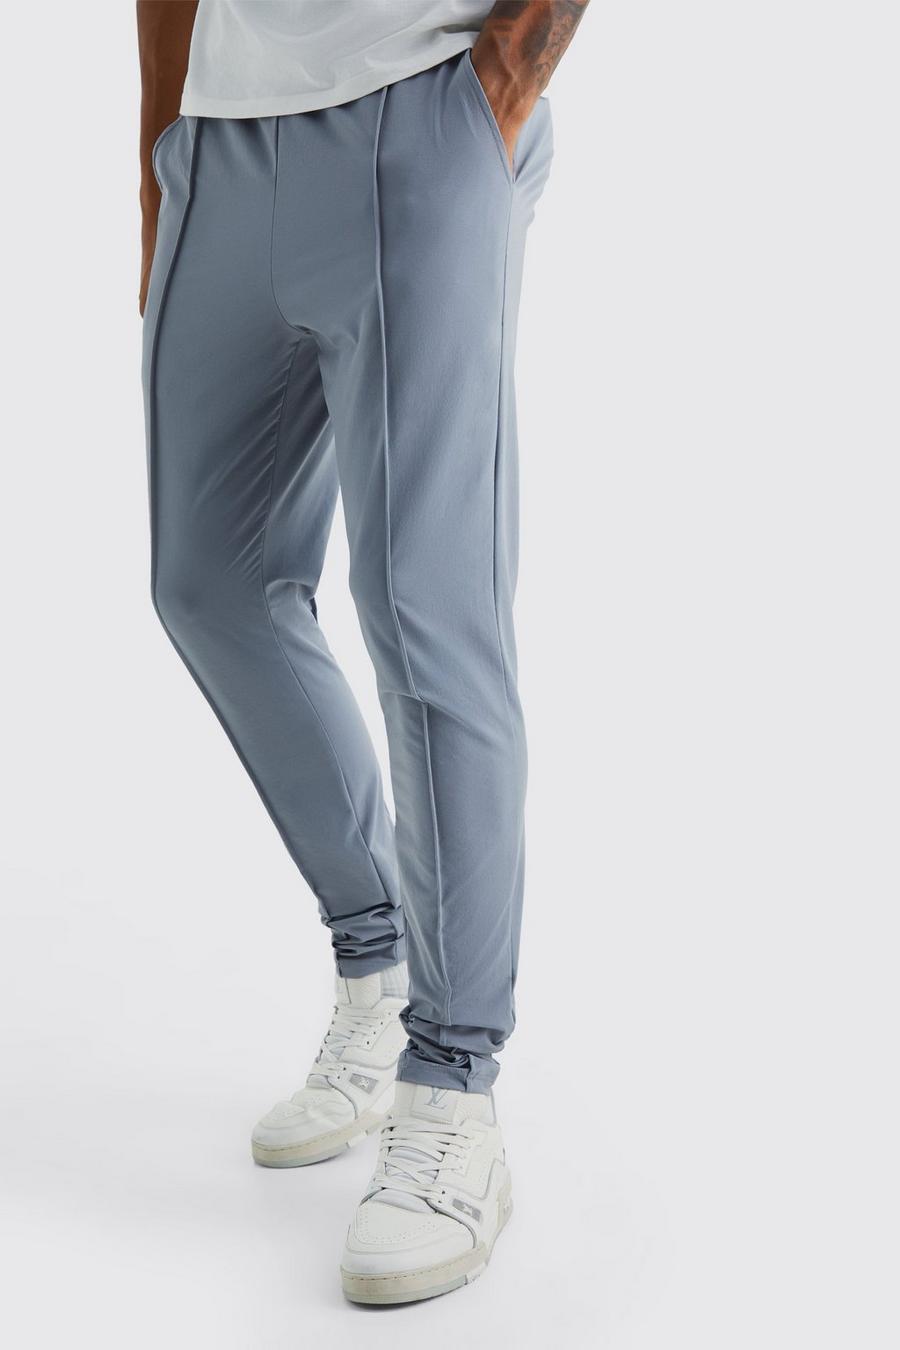 Pantaloni Tall in Stretch leggero elasticizzato con nervature, Light grey gris